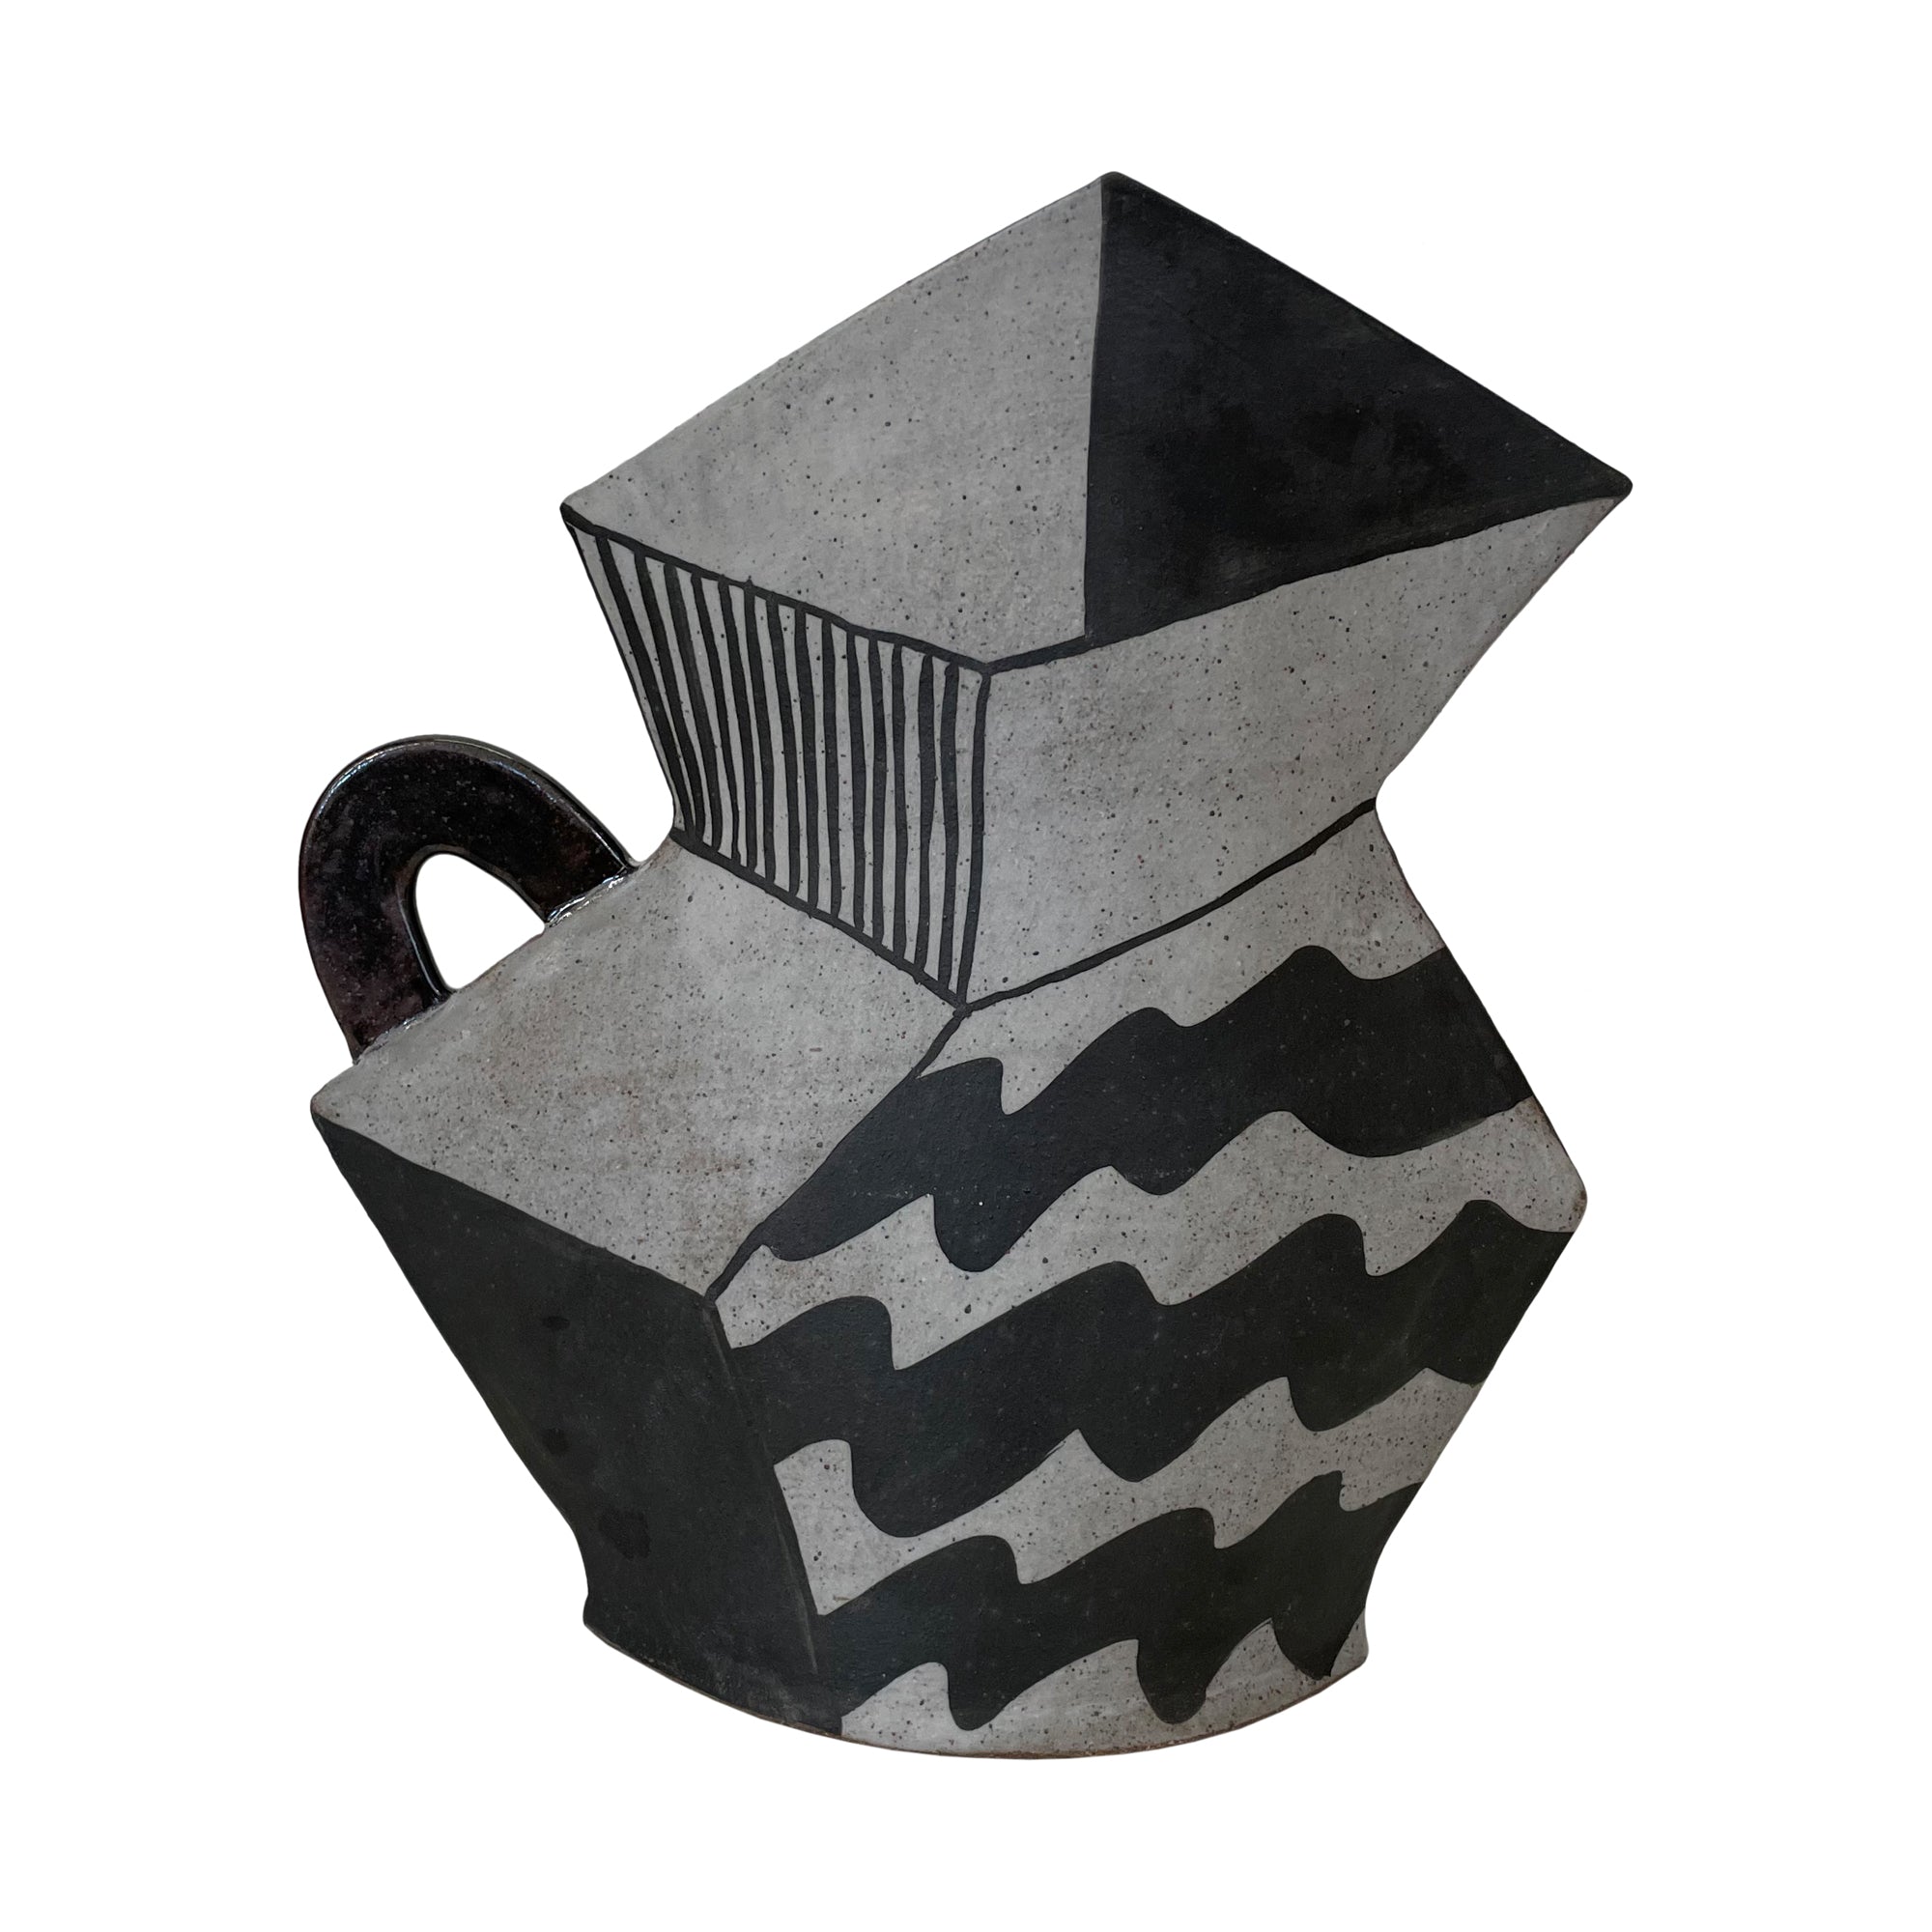 Studio Ceramic Cubist "Pitcher" Vase by Kazuko Matthews